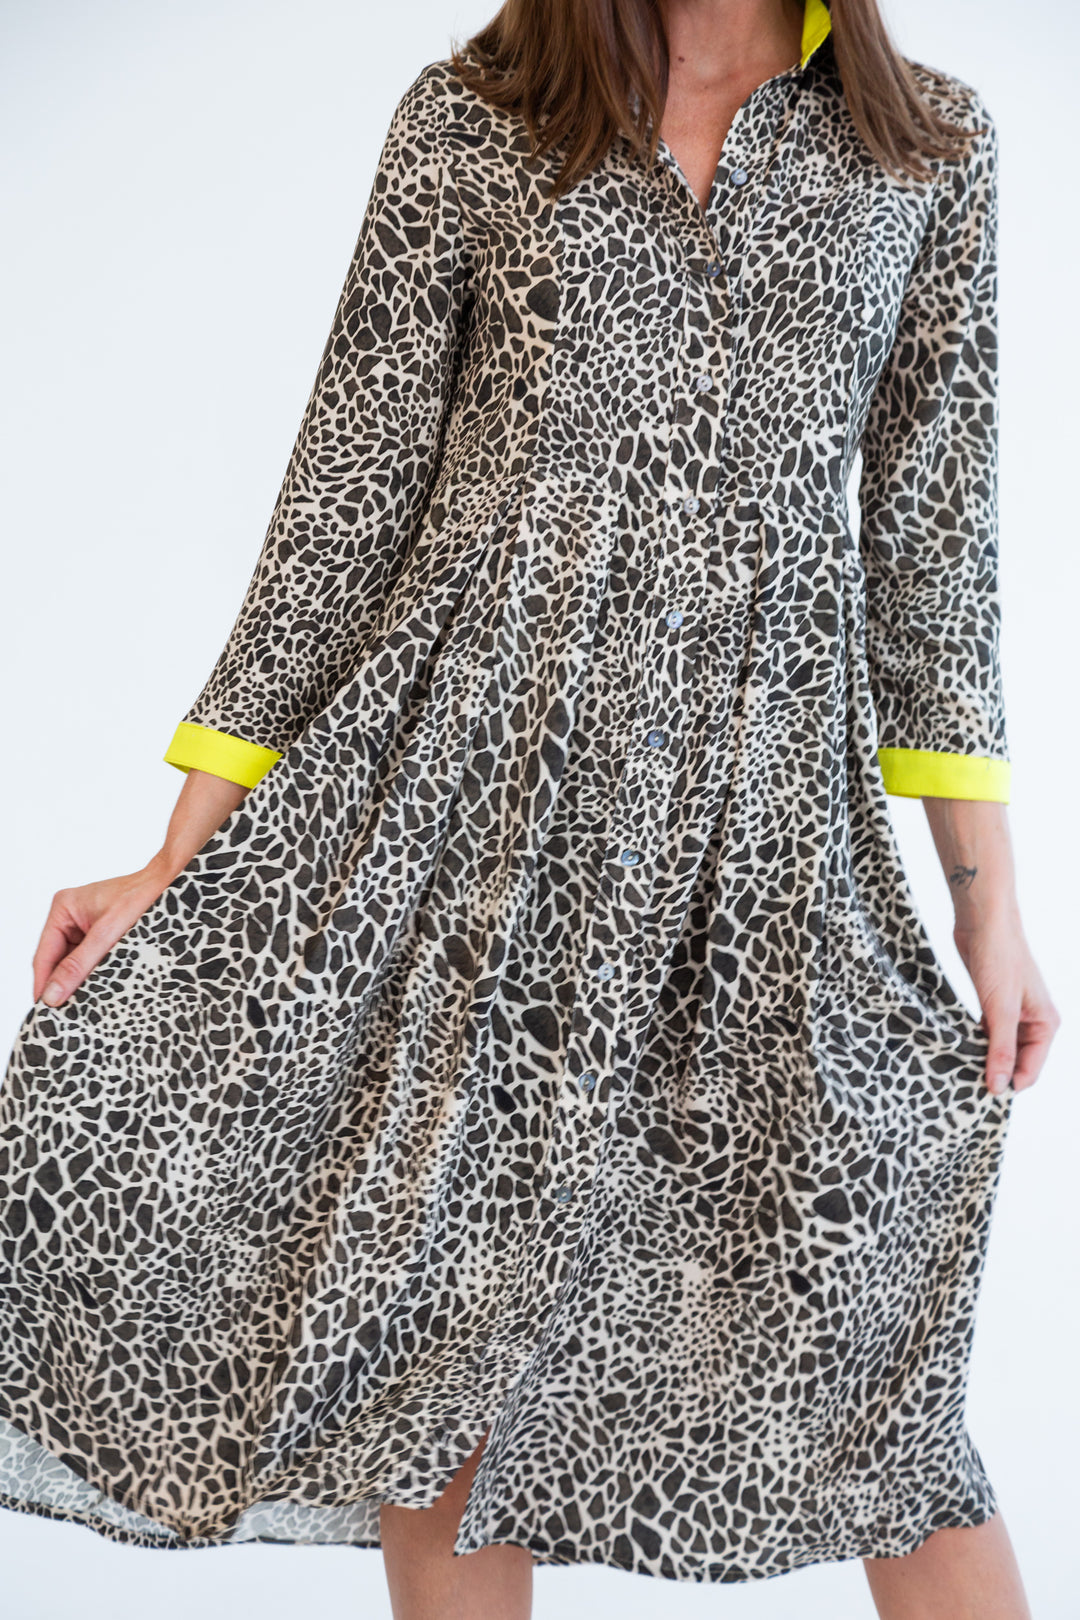 Delilah Dress Giraffe Print-DRESSES-kindacollection-Kinda